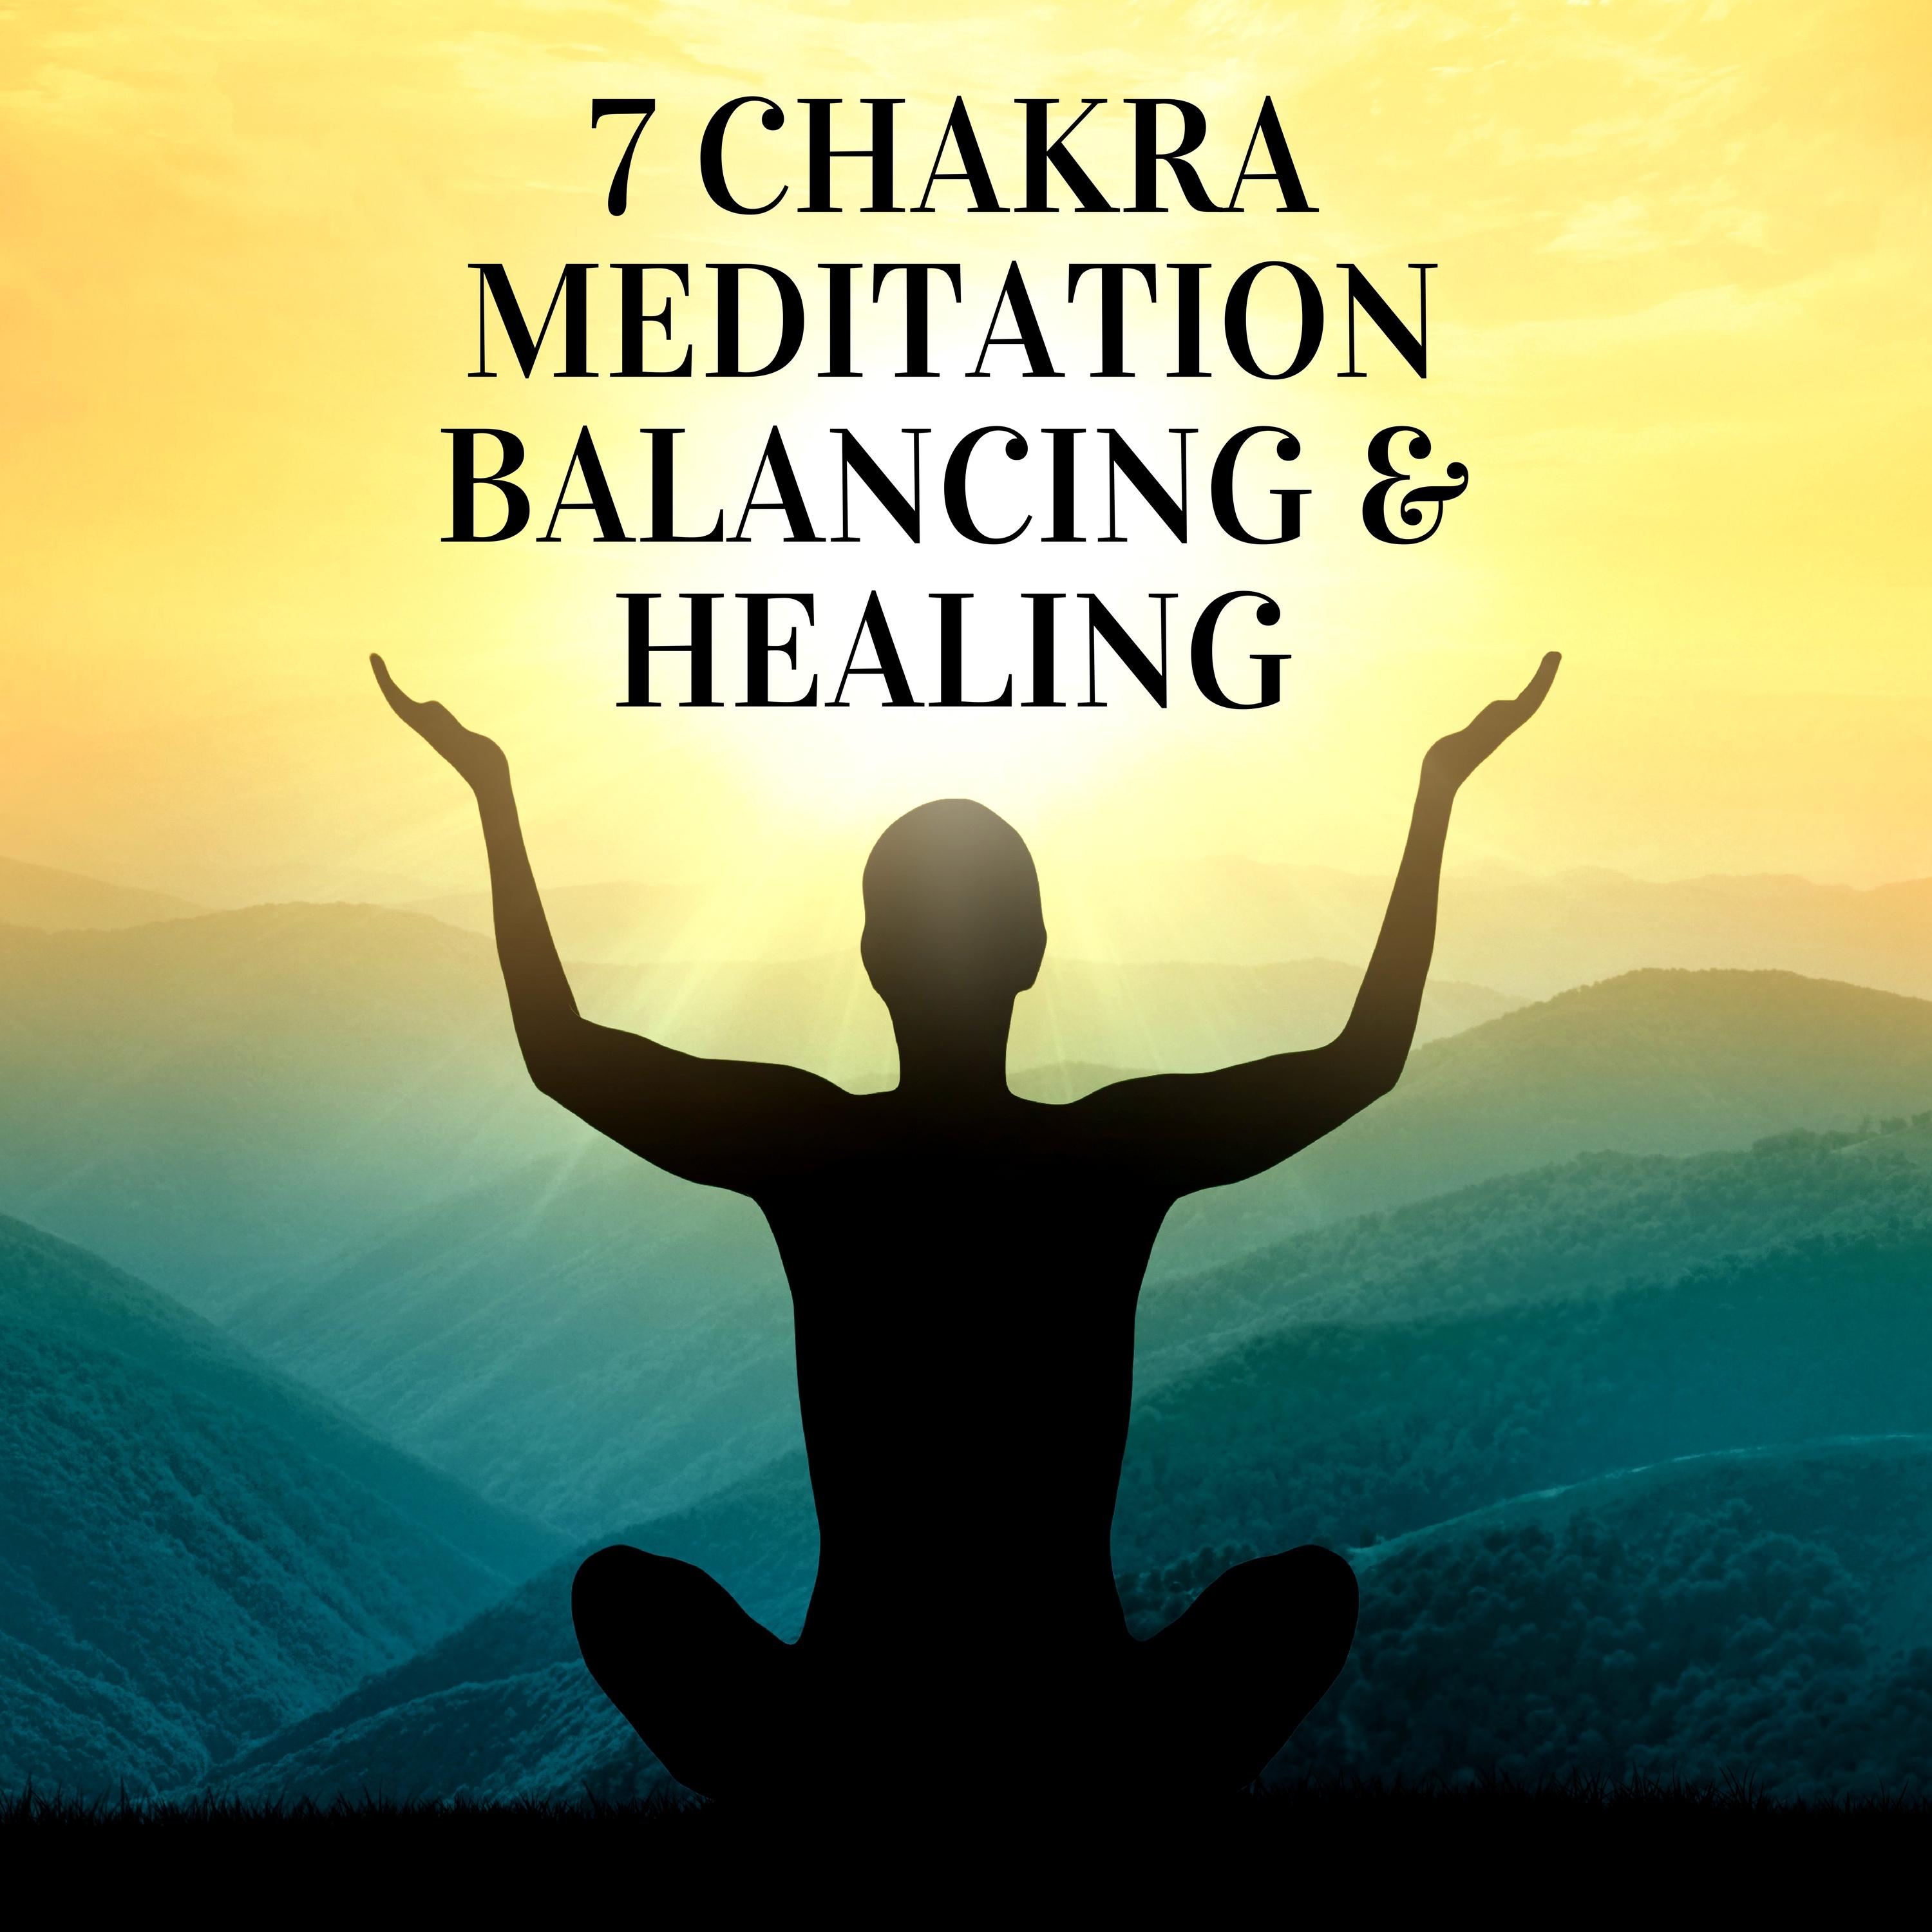 7 Chakra Meditation Balancing & Healing